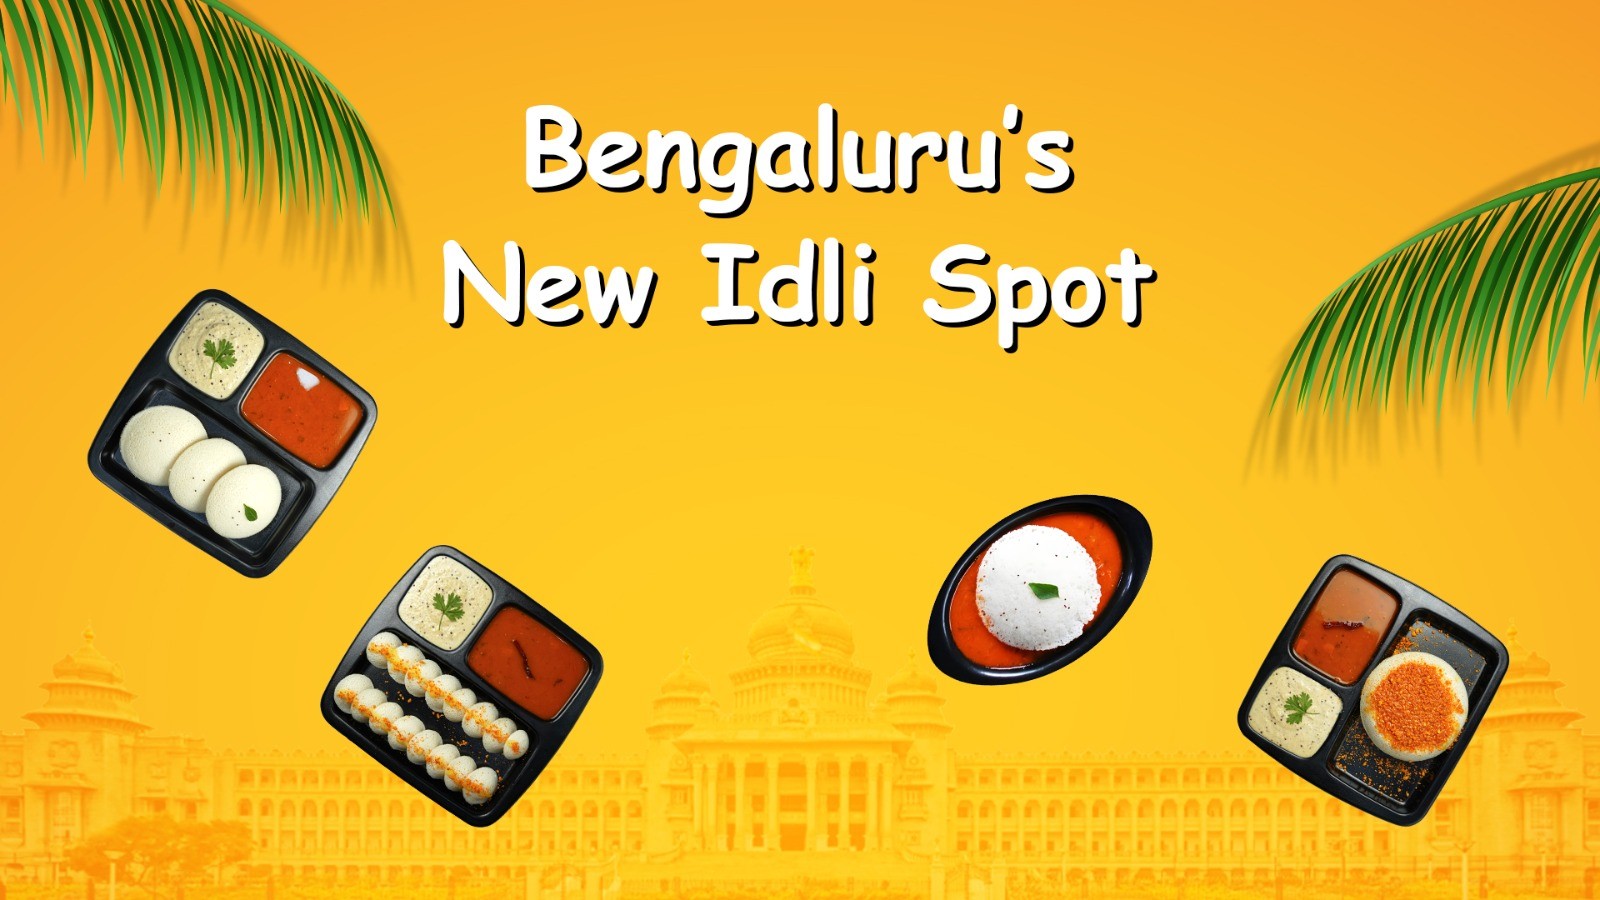 Bengaluru's new idli spot - Naadbramha Idli